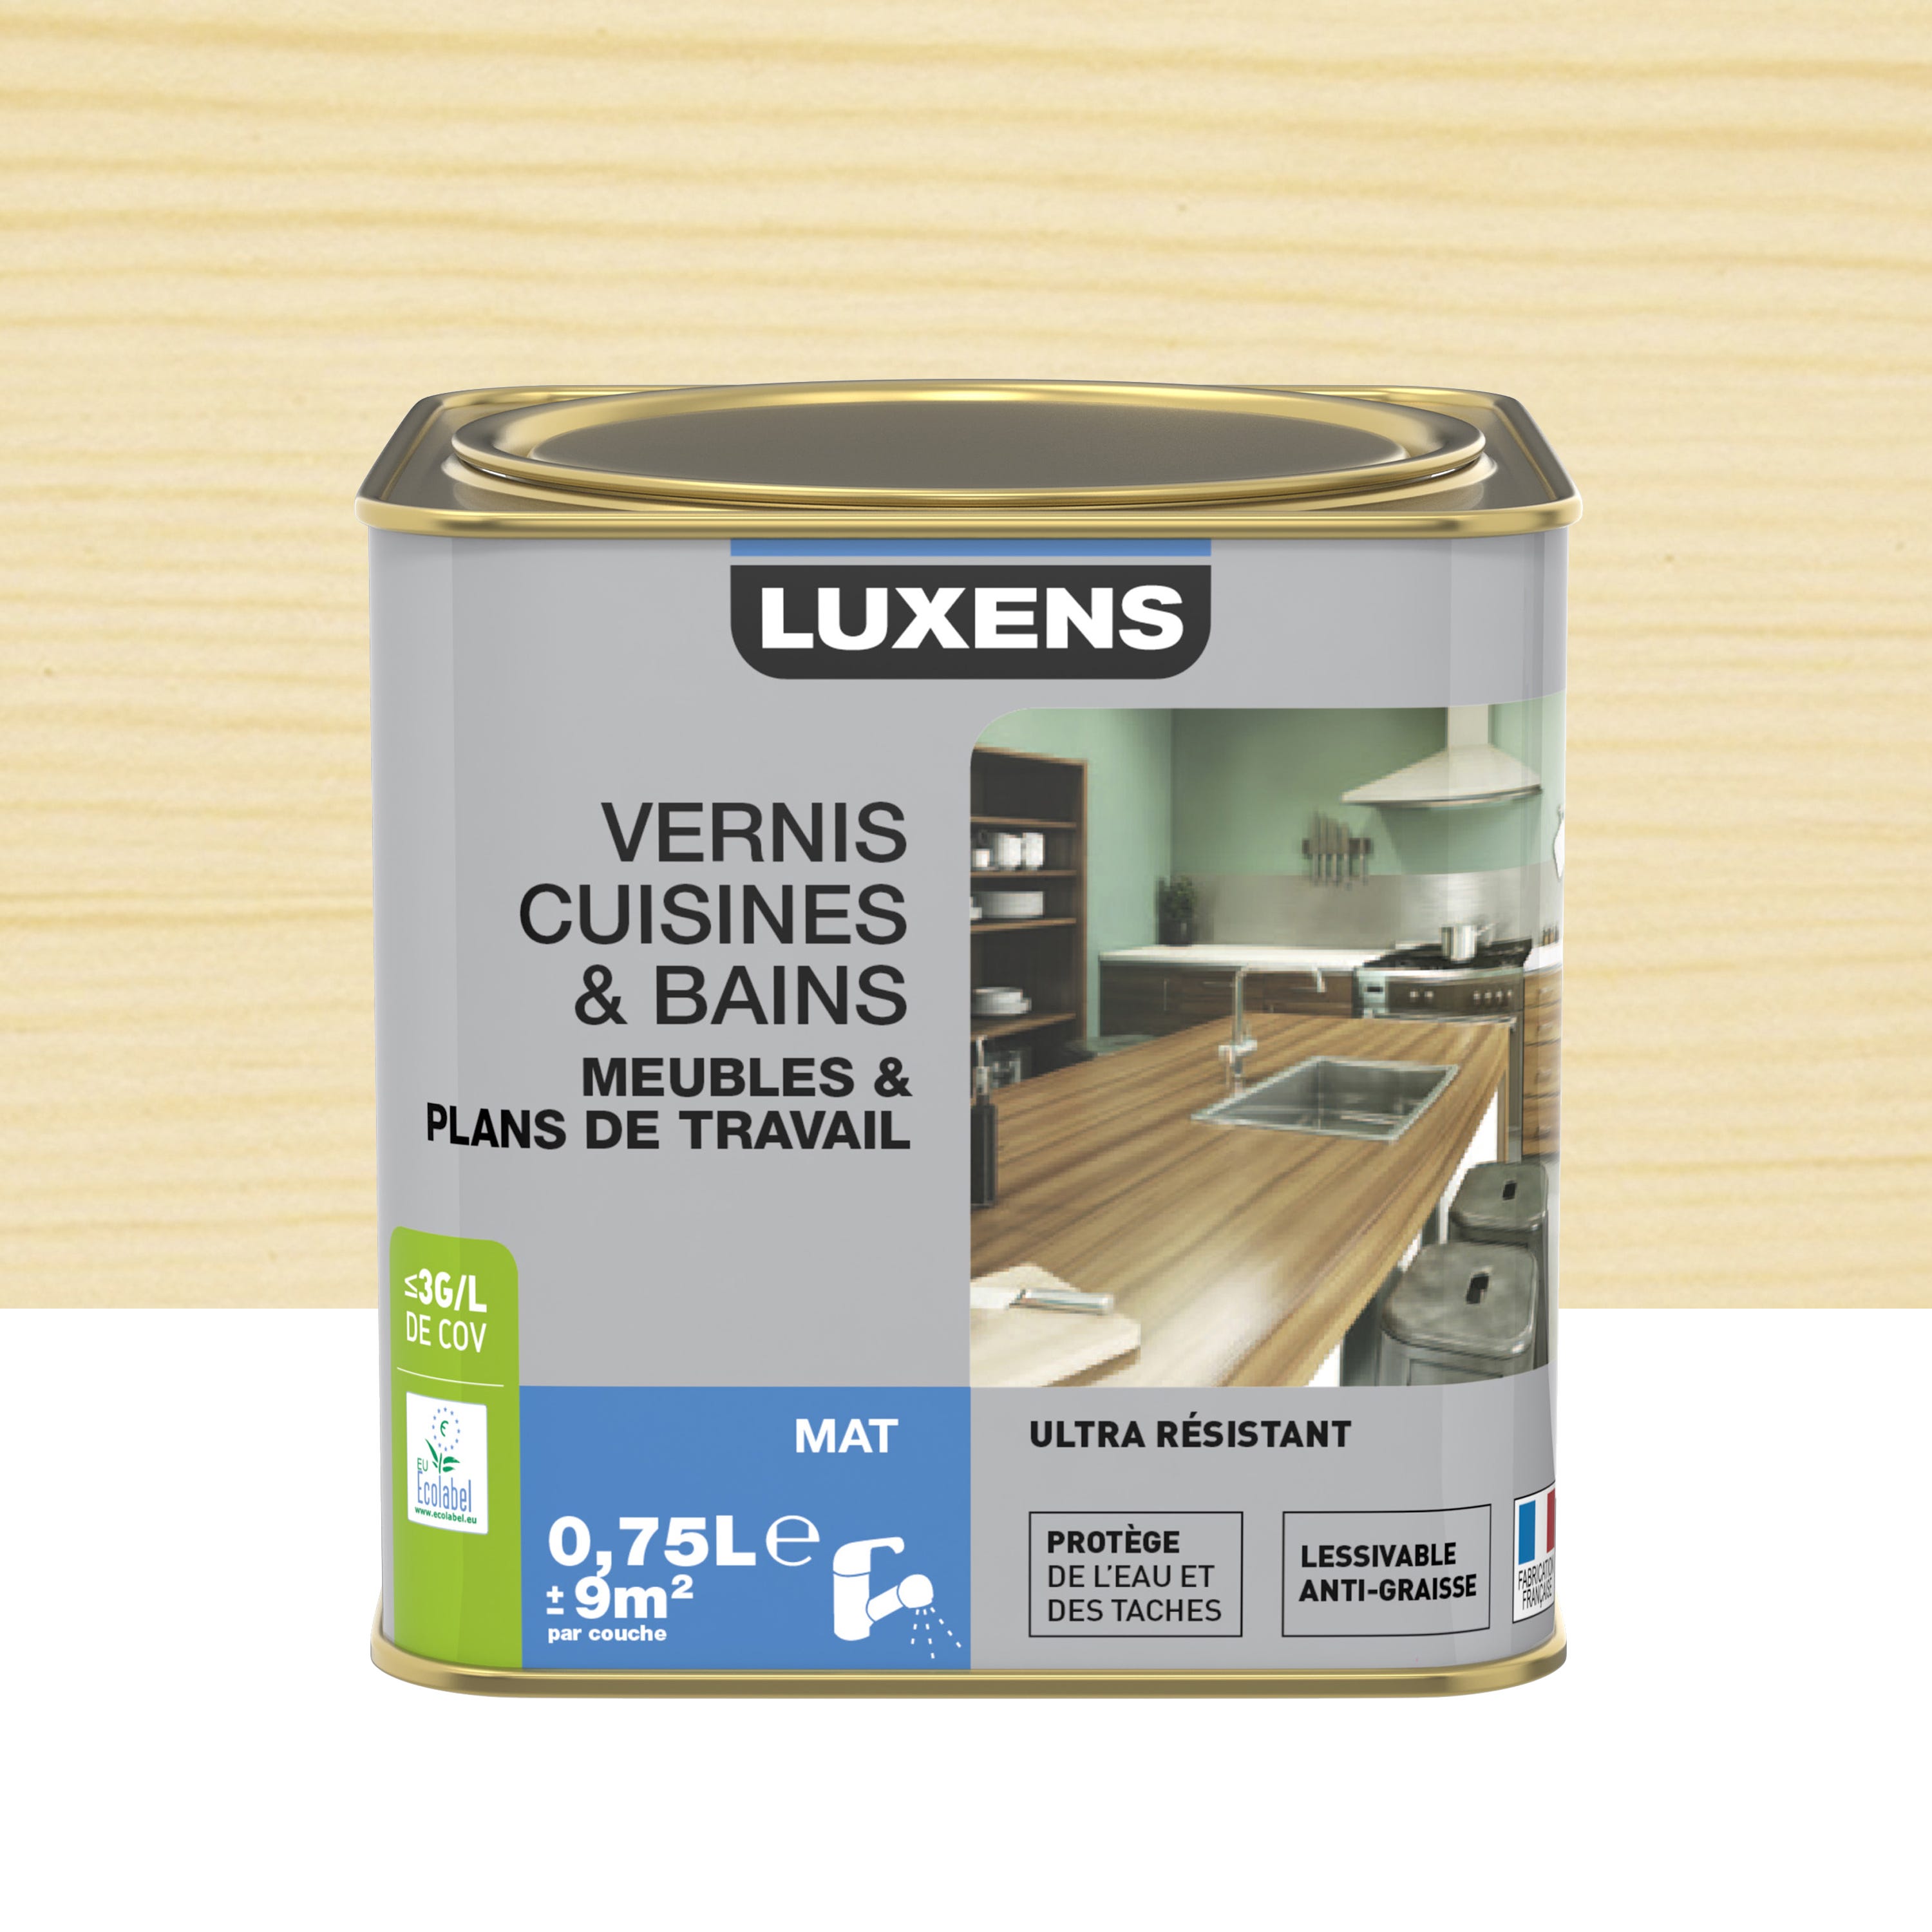 Vernis cuisine et bain LUXENS, incolore mat, 0.75l